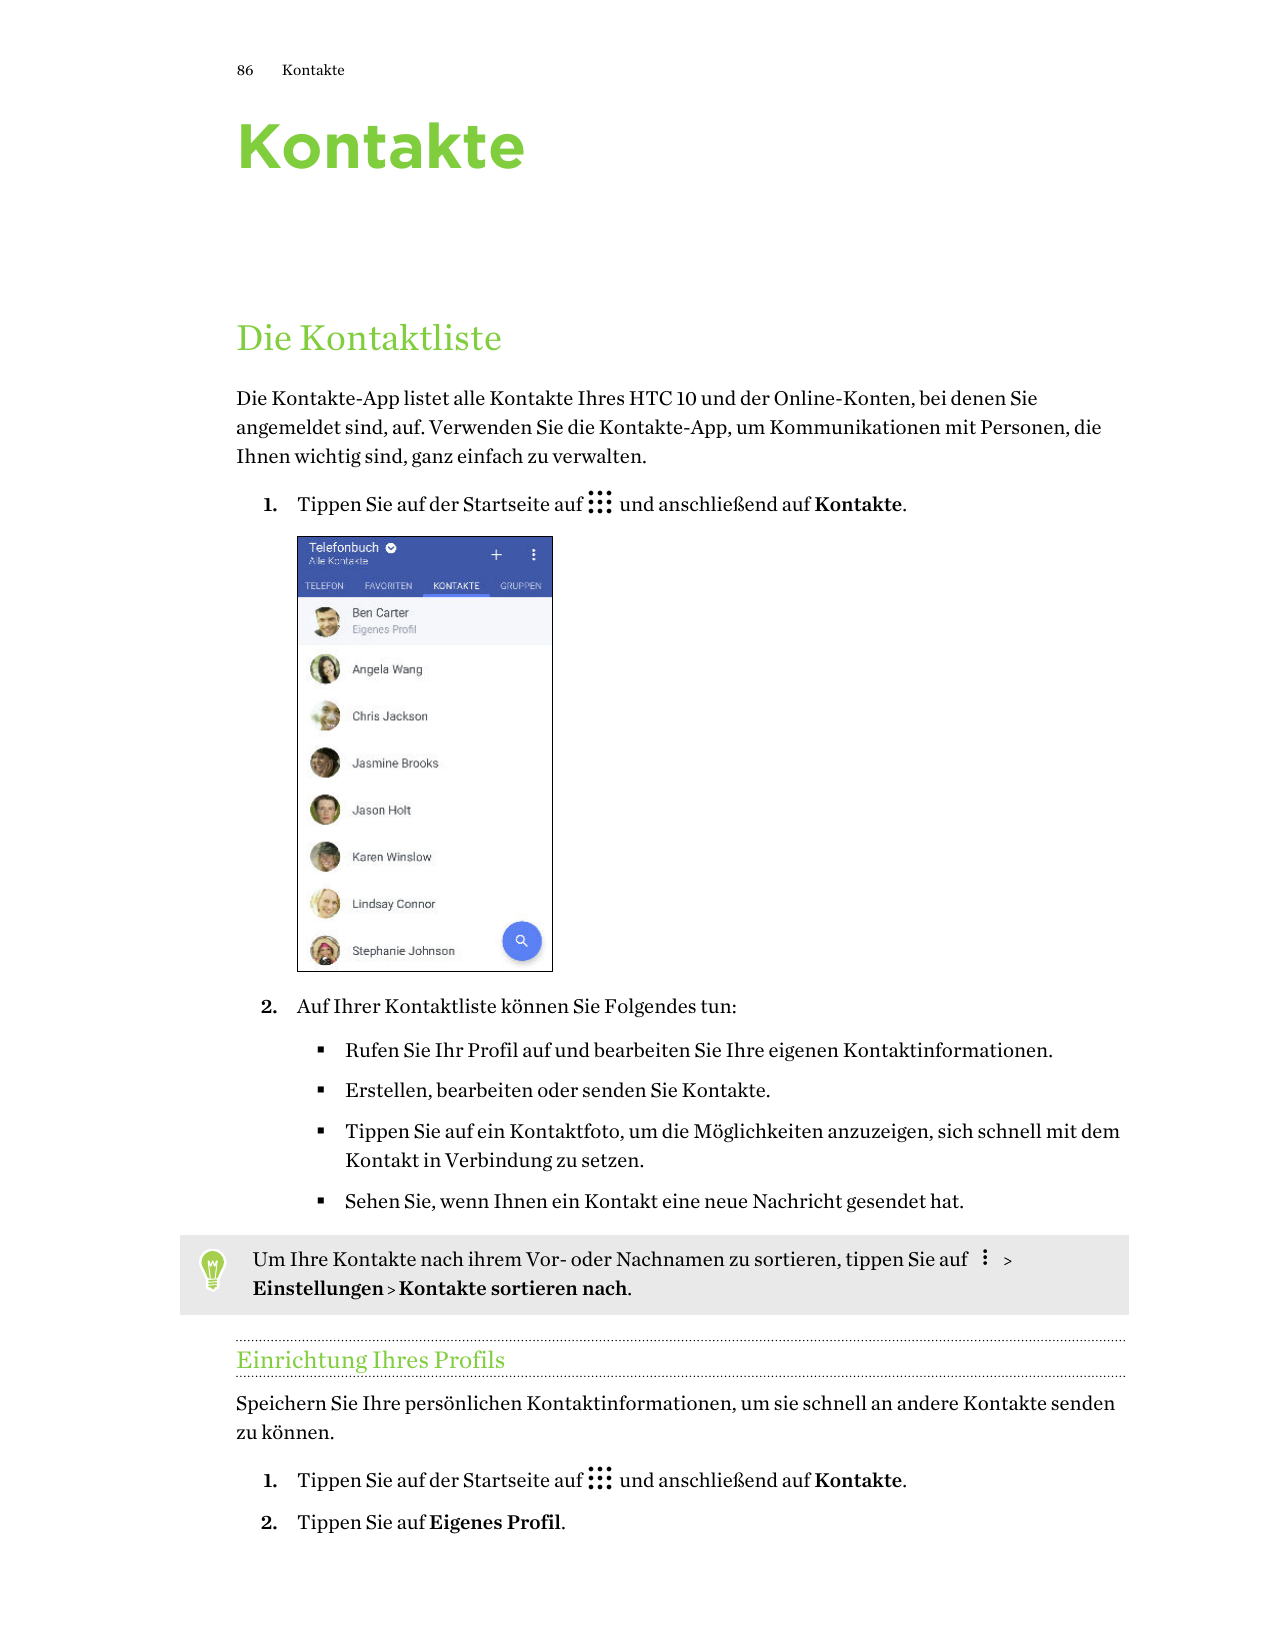 86KontakteKontakteDie KontaktlisteDie Kontakte-App listet alle Kontakte Ihres HTC 10 und der Online-Konten, bei denen Sieangemel